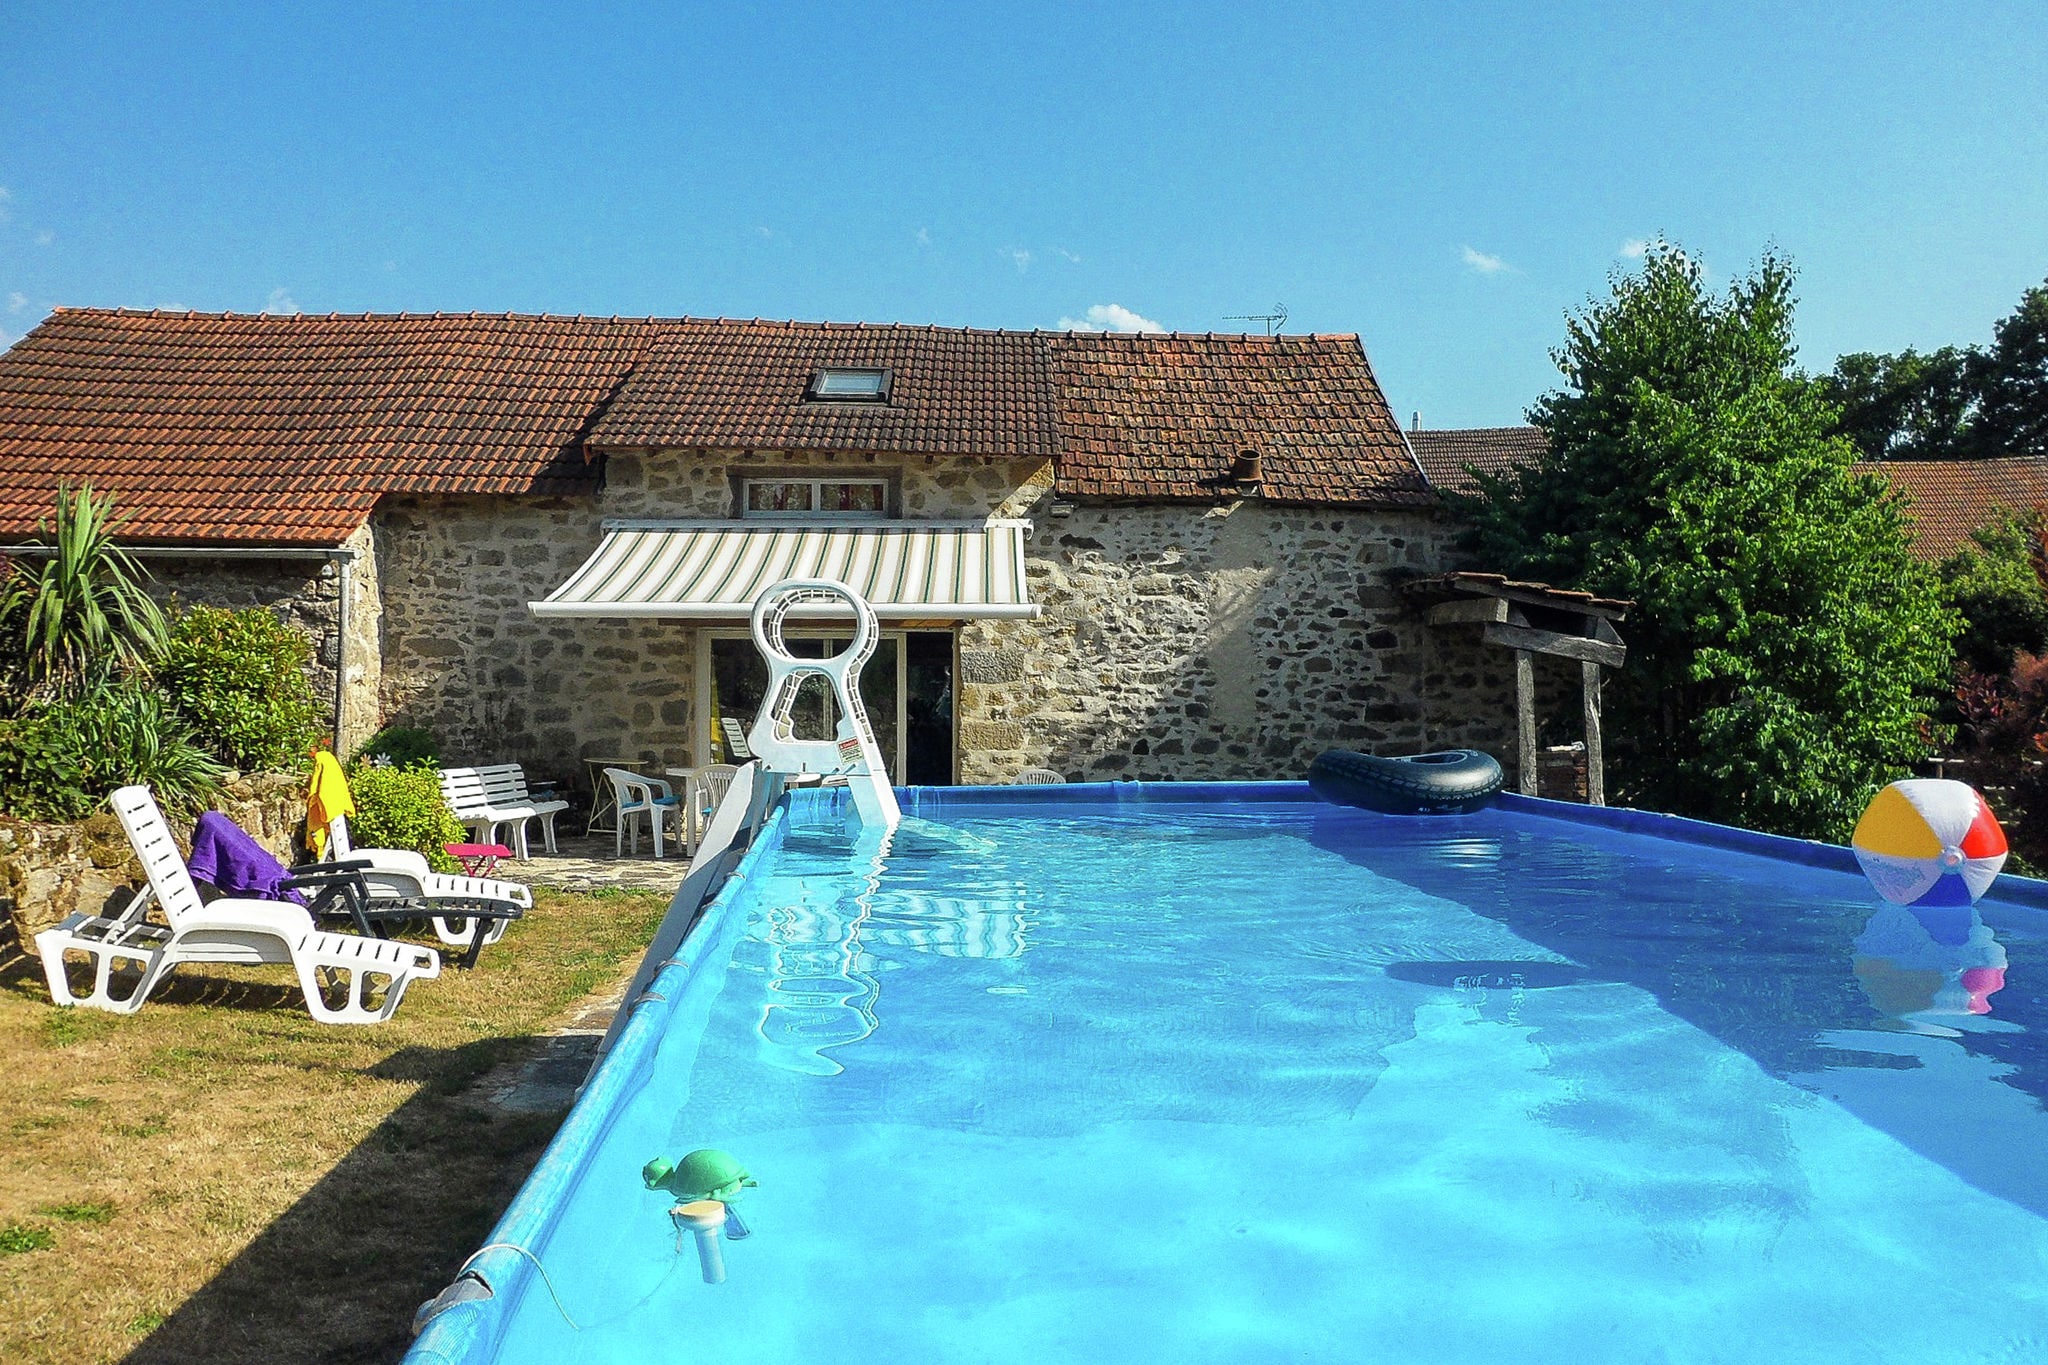 Maison de vacances confortable à Marsac, France avec piscine